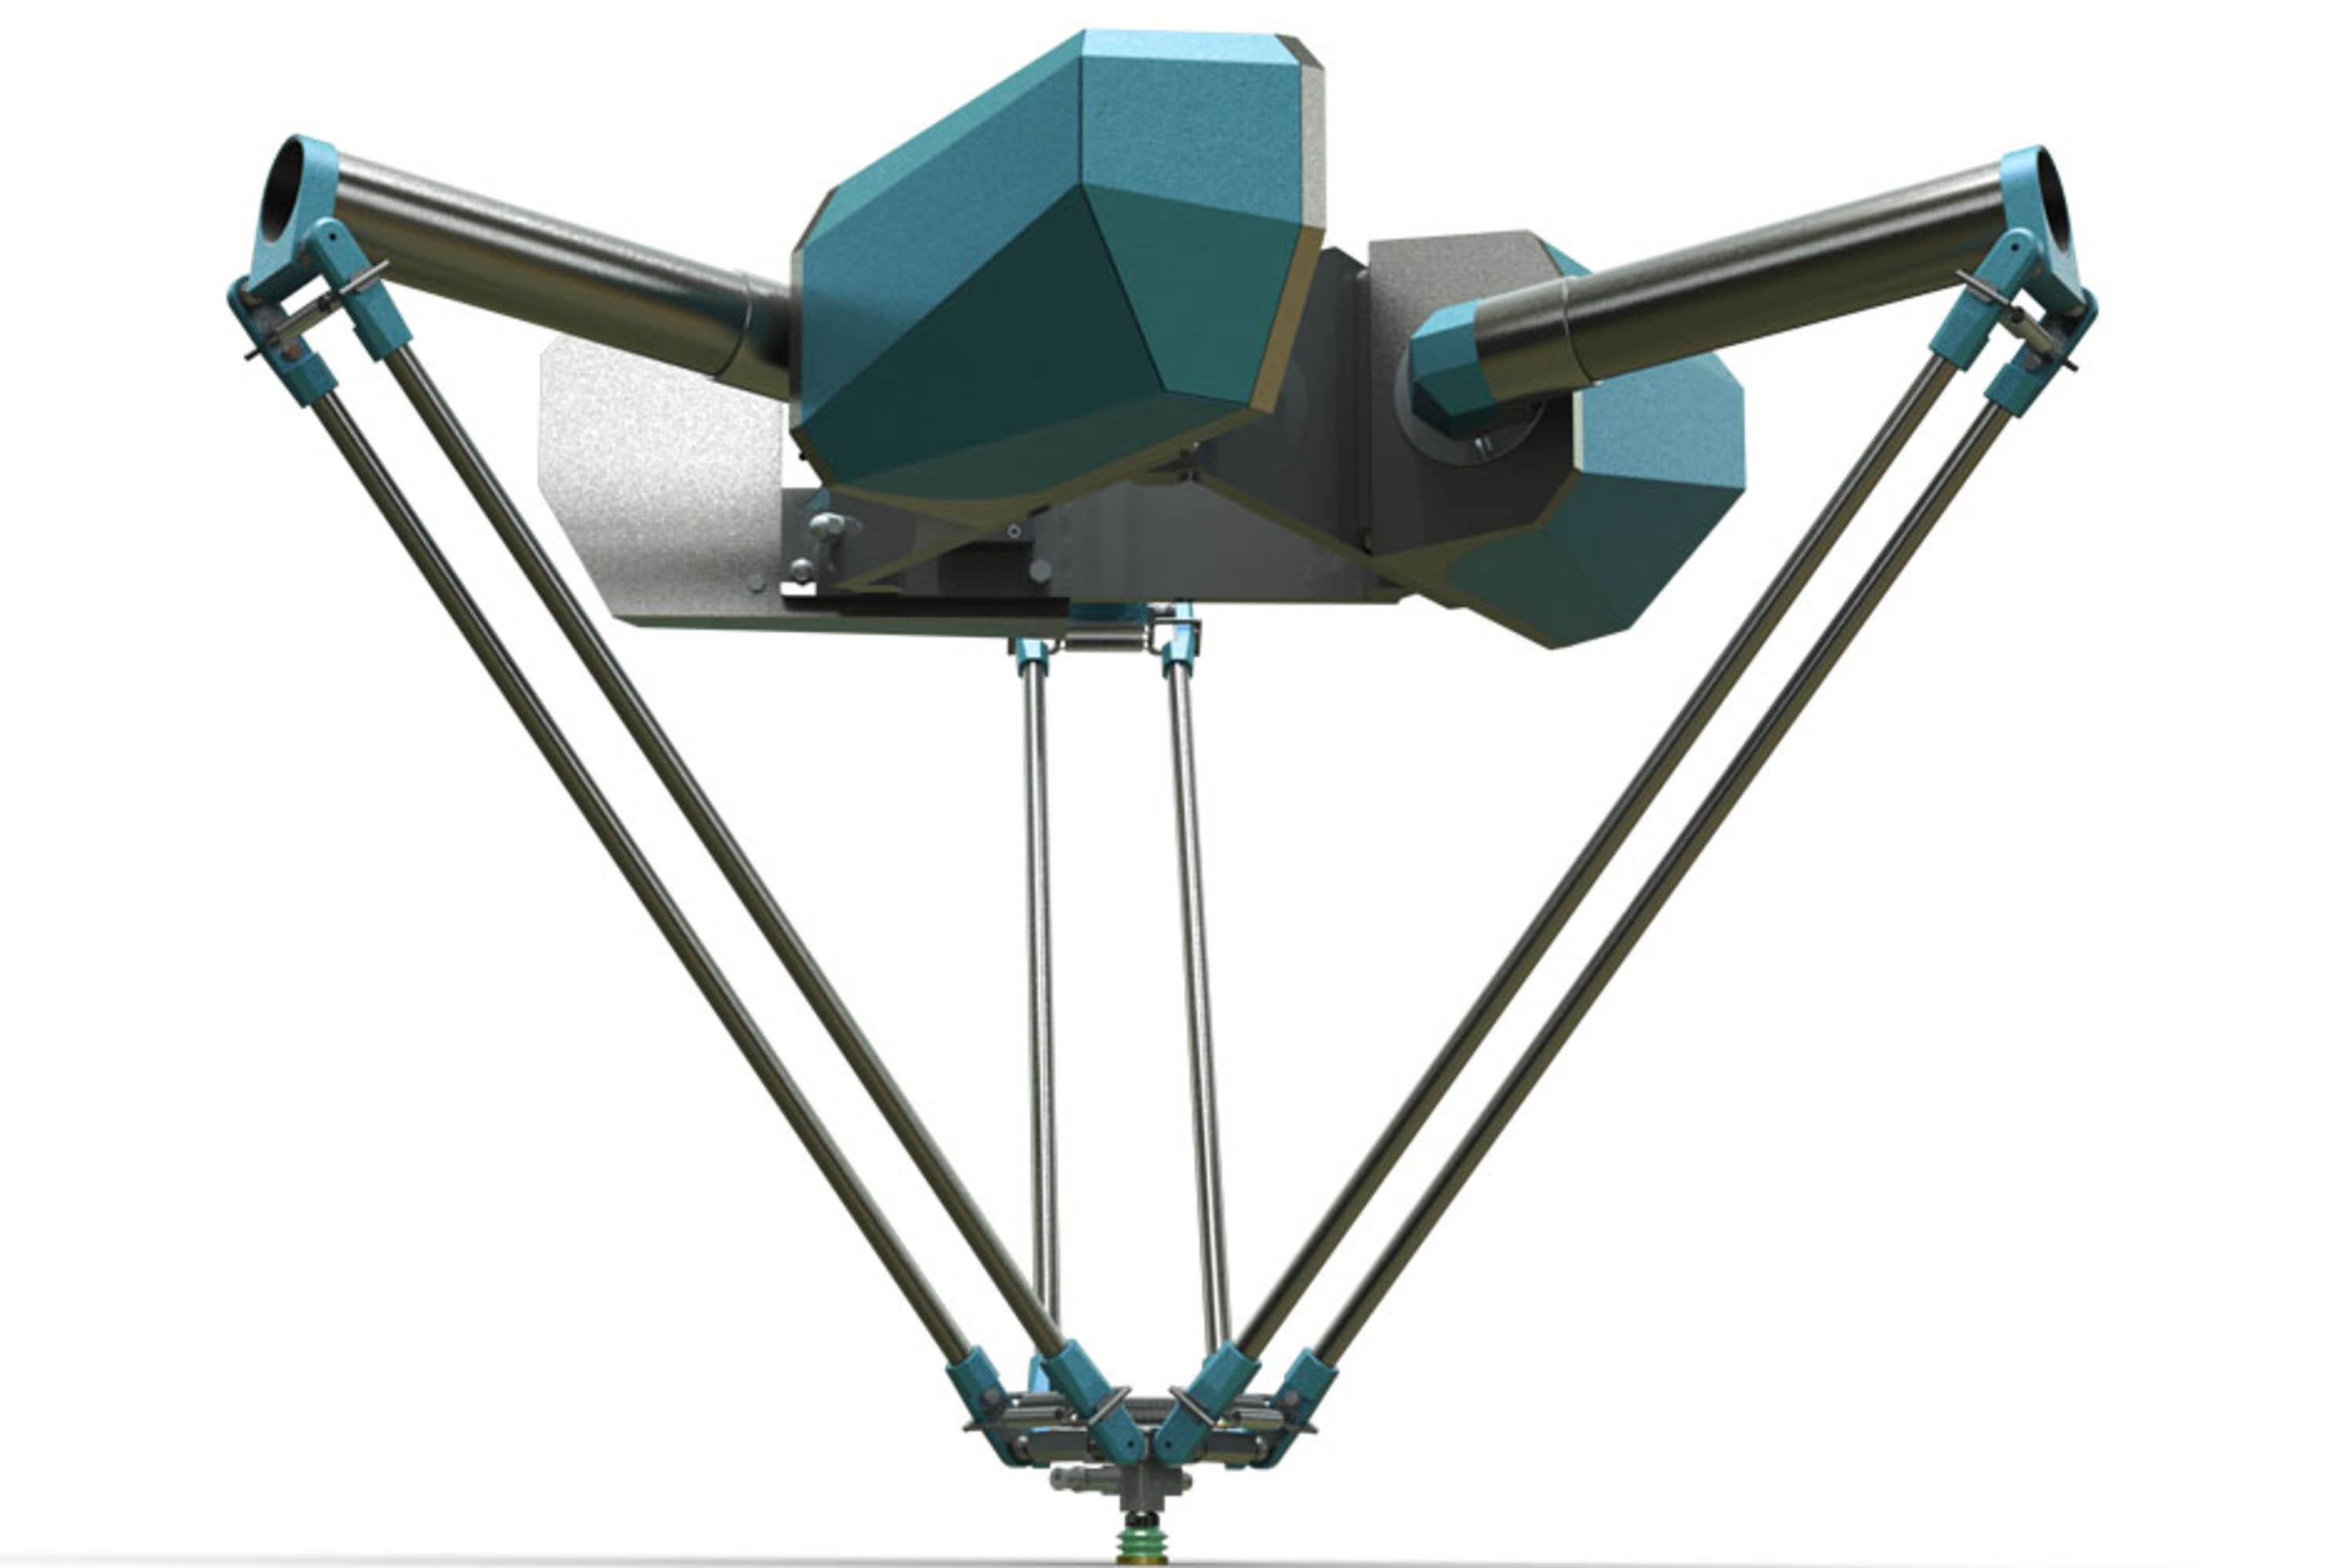 Deltarobot industrial design